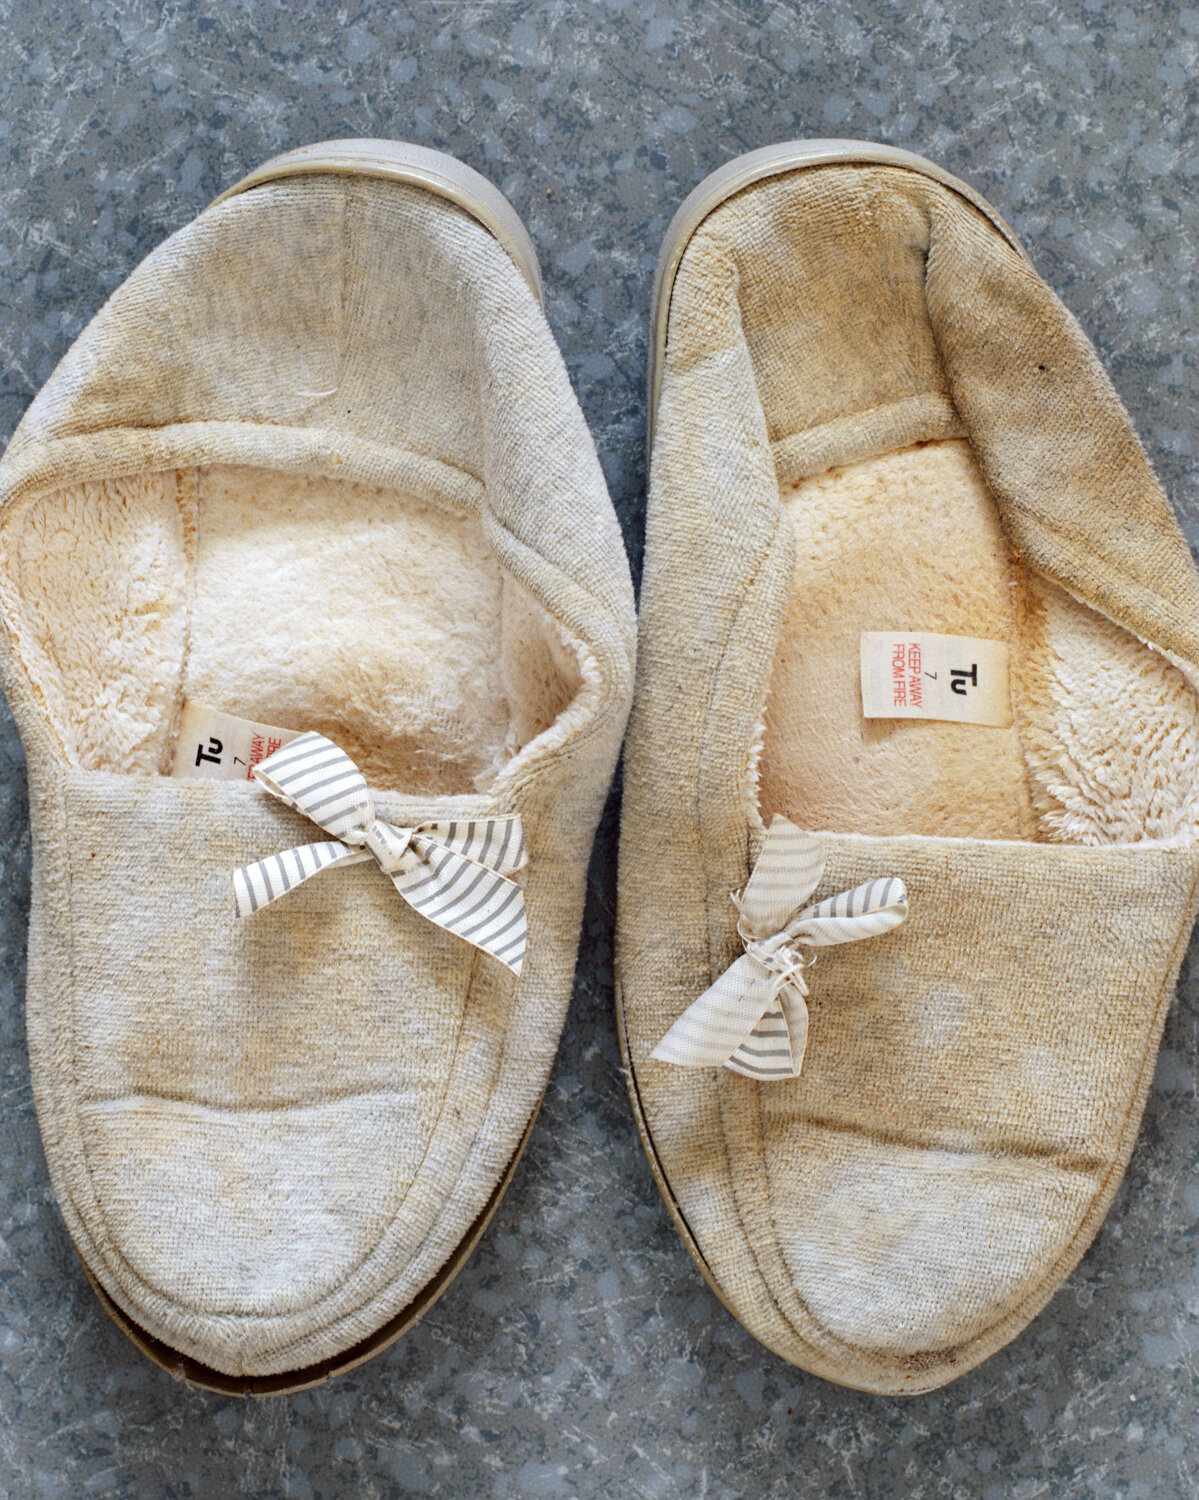 36) Nans Old Slippers.jpg